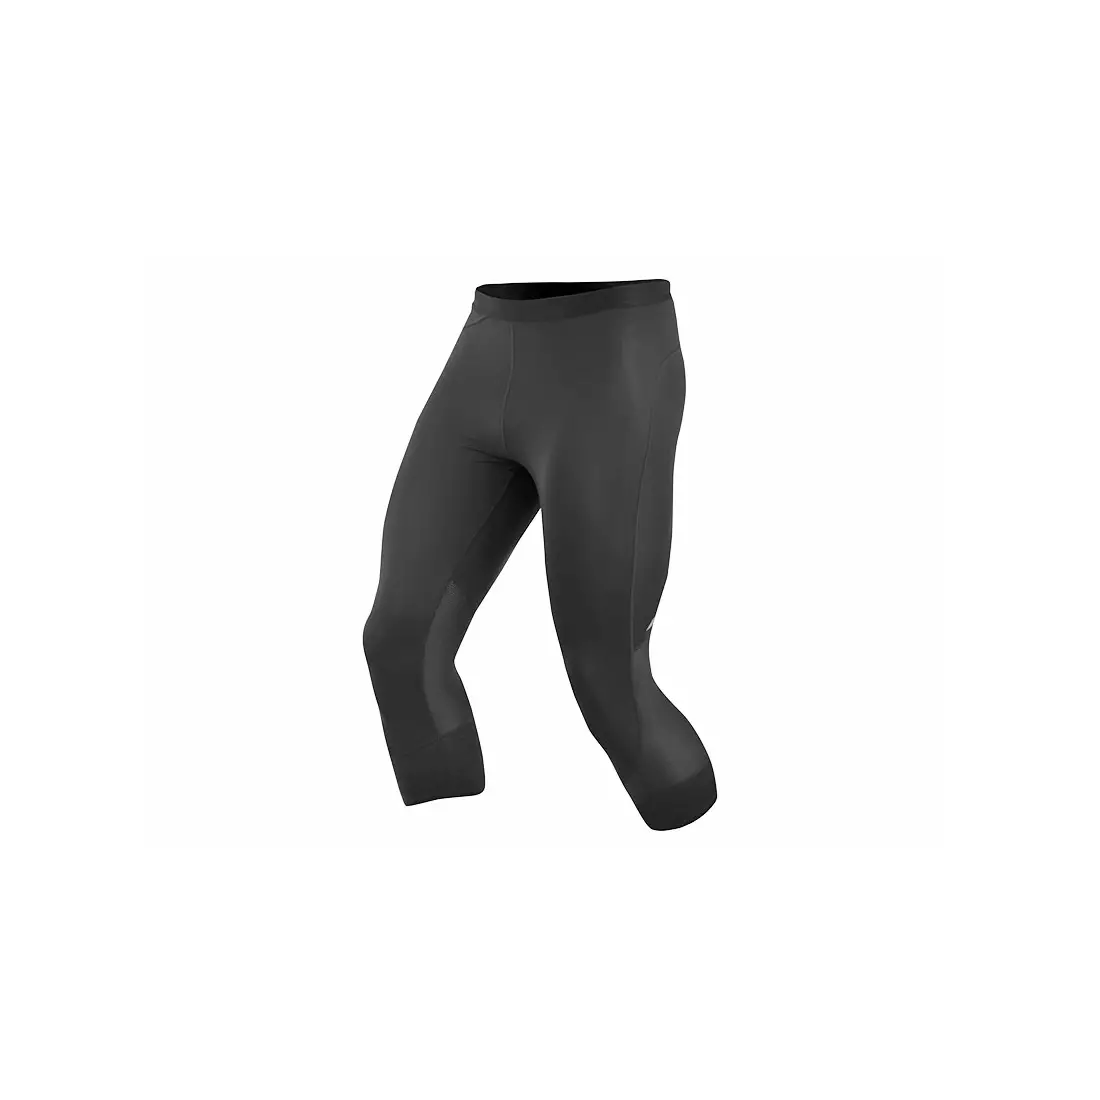 PEARL IZUMI RUN men's running shorts 3/4 FLASH 12111401-021, color: black